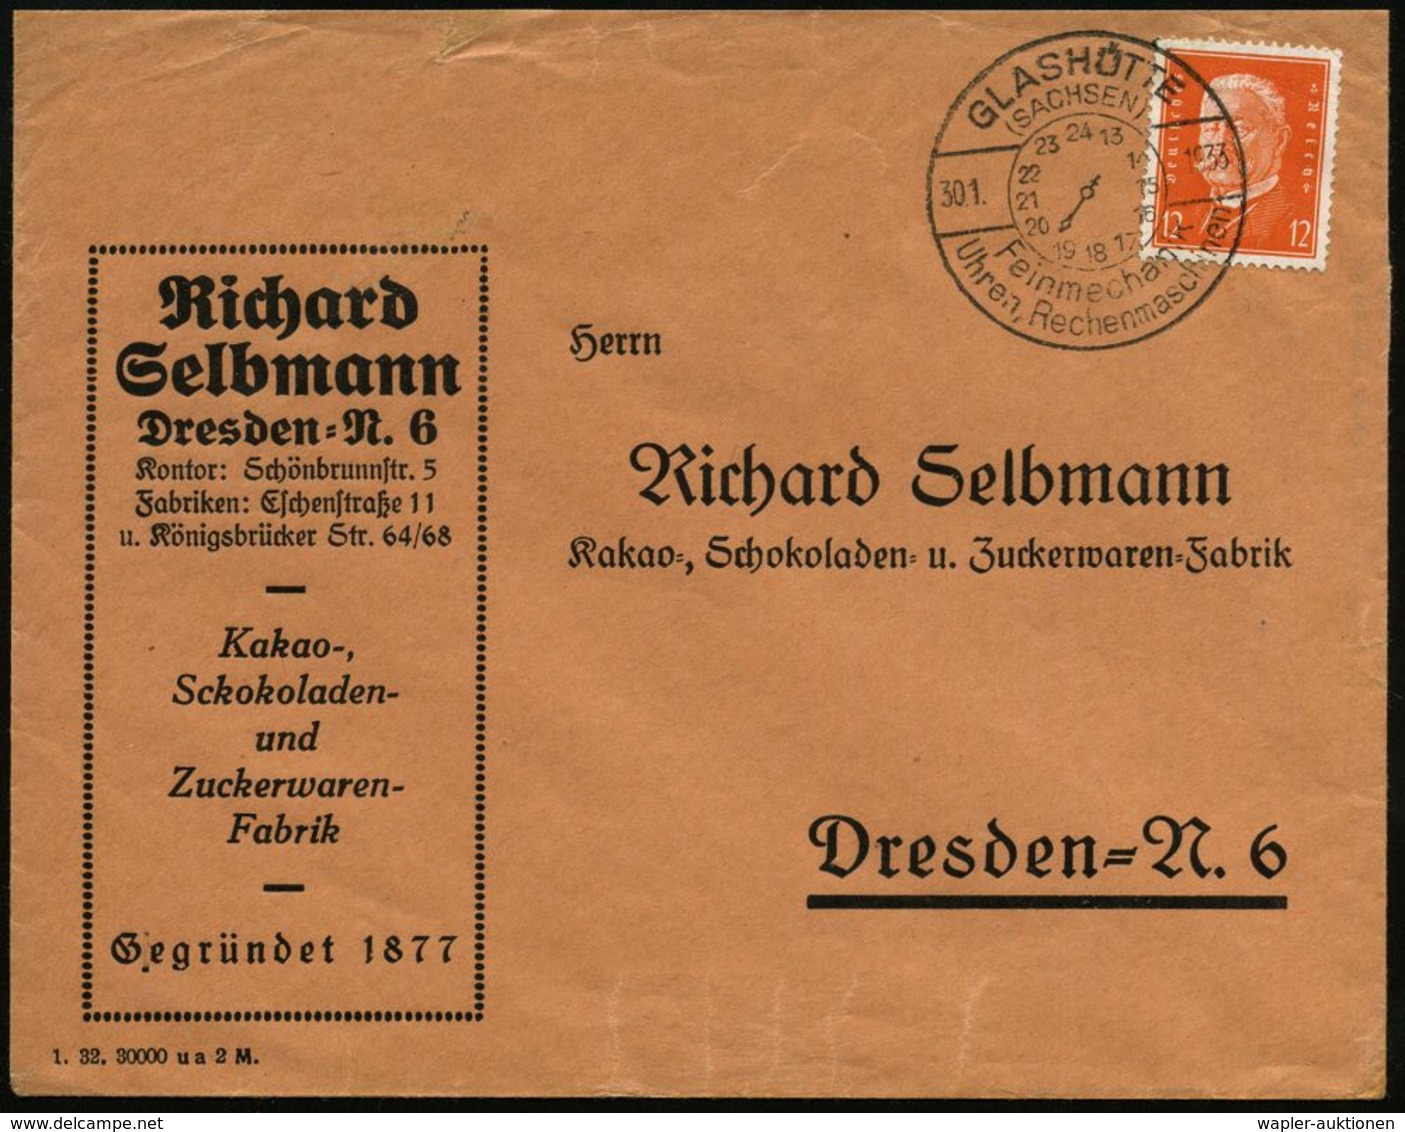 UHR / ZEITMESSUNG : GLASHÜTTE/ (SACHSEN)/ Feinmechanik/ Uhren,Rechenmaschinen 1933 (30.1.) HWSt Mit Zifferblatt (13-24 U - Horlogerie